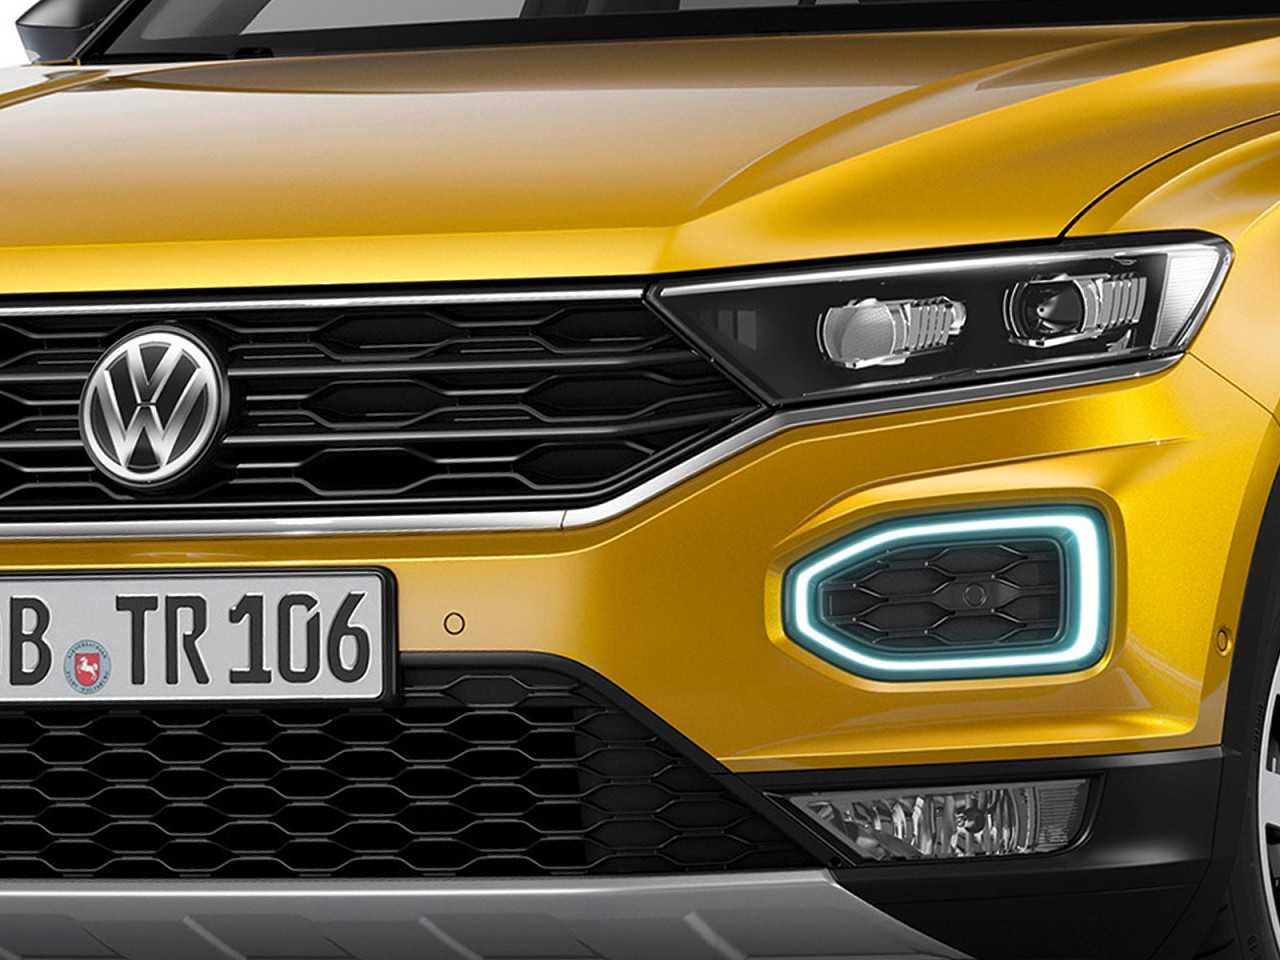 VolkswagenT-Cross 2018 - grade frontal